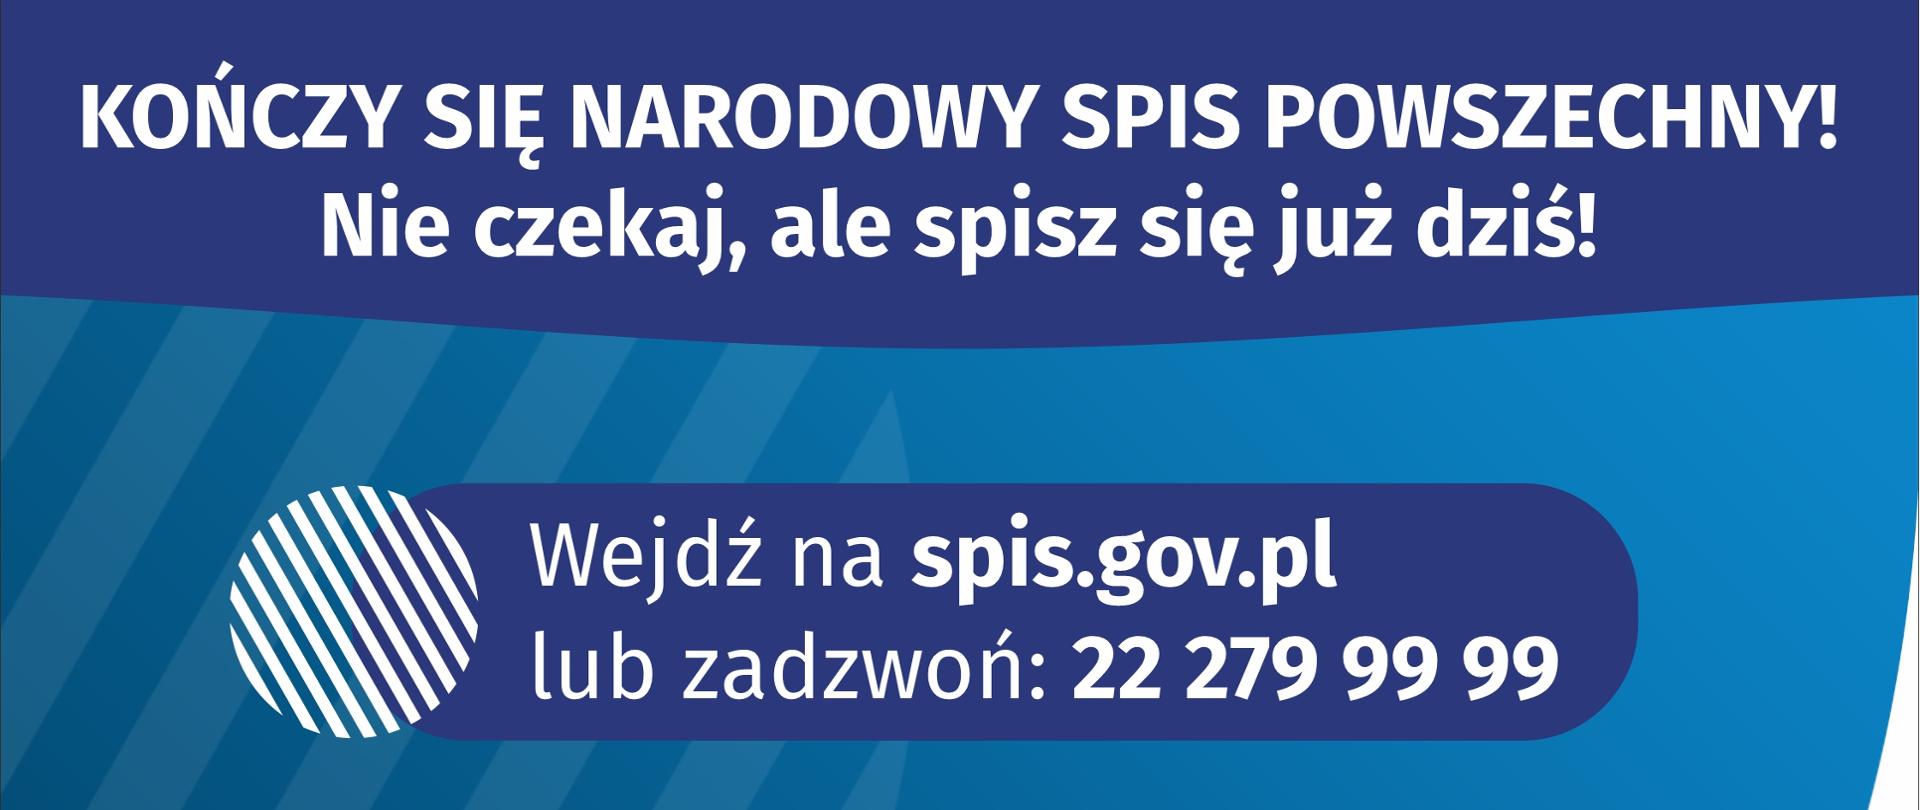 Plakat przedstawia informację o kończącym się Narodowym Spisie Powszechnym, Nie czekaj, ale spisz się już dziś! Wejdź na spis.gov.pl lub zadzwoń: 222799999. Pamiętaj, że udział w spisie jest obowiązkowy!